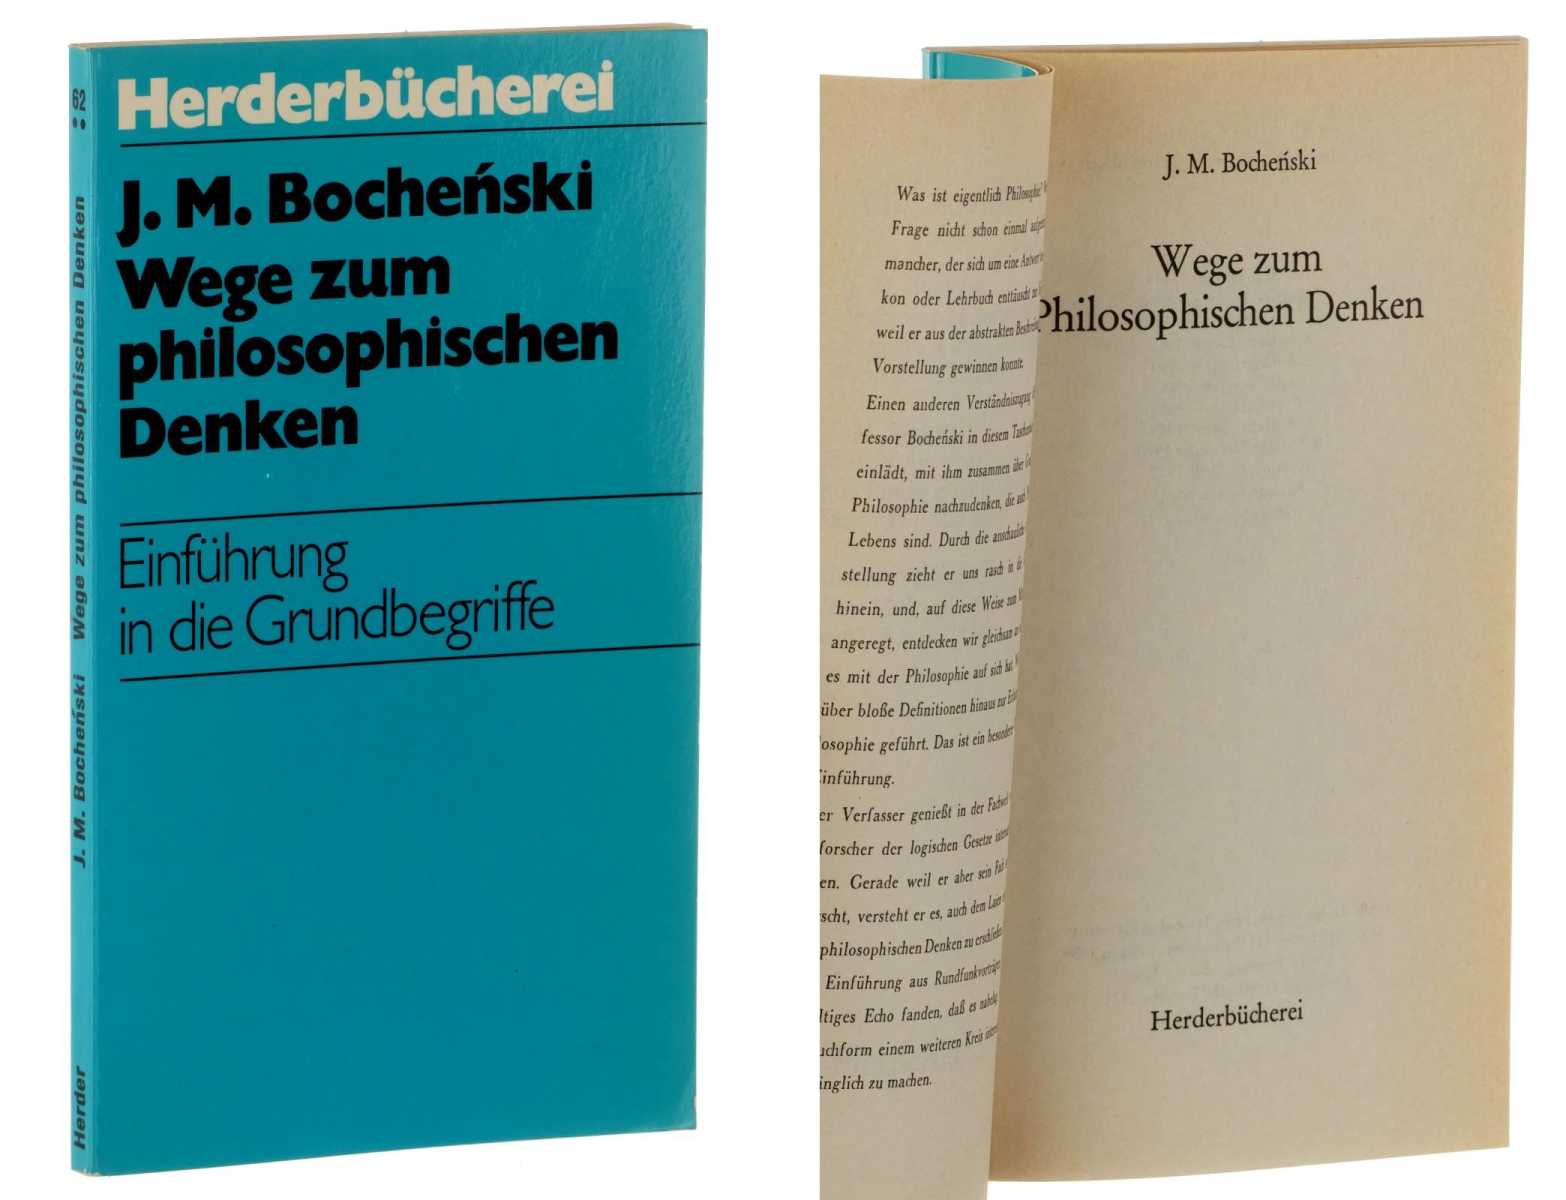 Bochenski, Joseph M.:  Wege zum philosophischen Denken. Einf. in d. Grundbegriffe. 